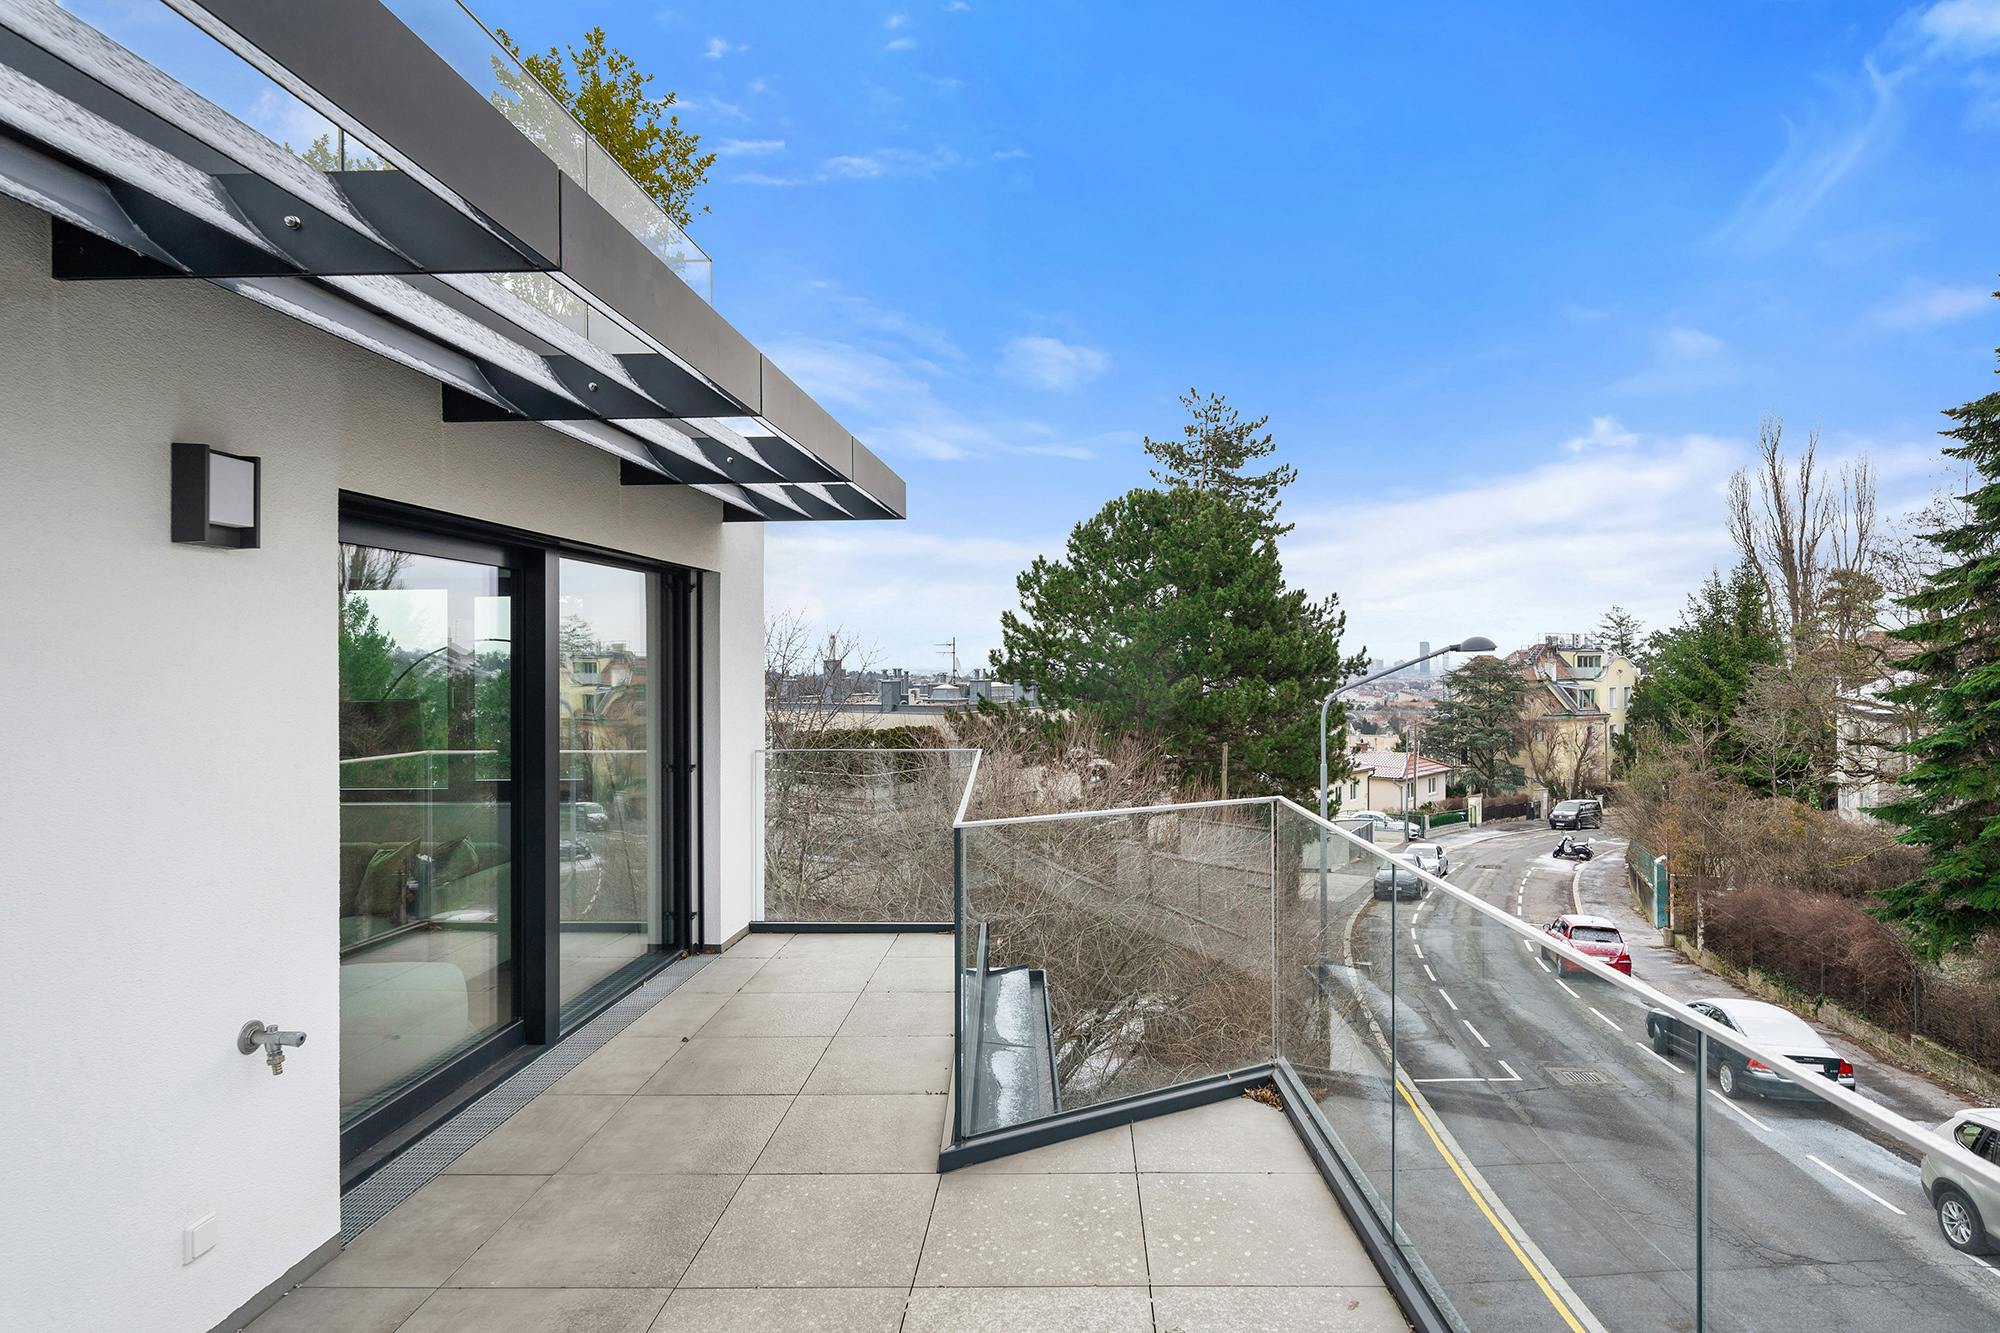 Verlockendes Panorama: Wunderschöne Drei-Zimmer-Wohnung mit Terrasse in Glanzing